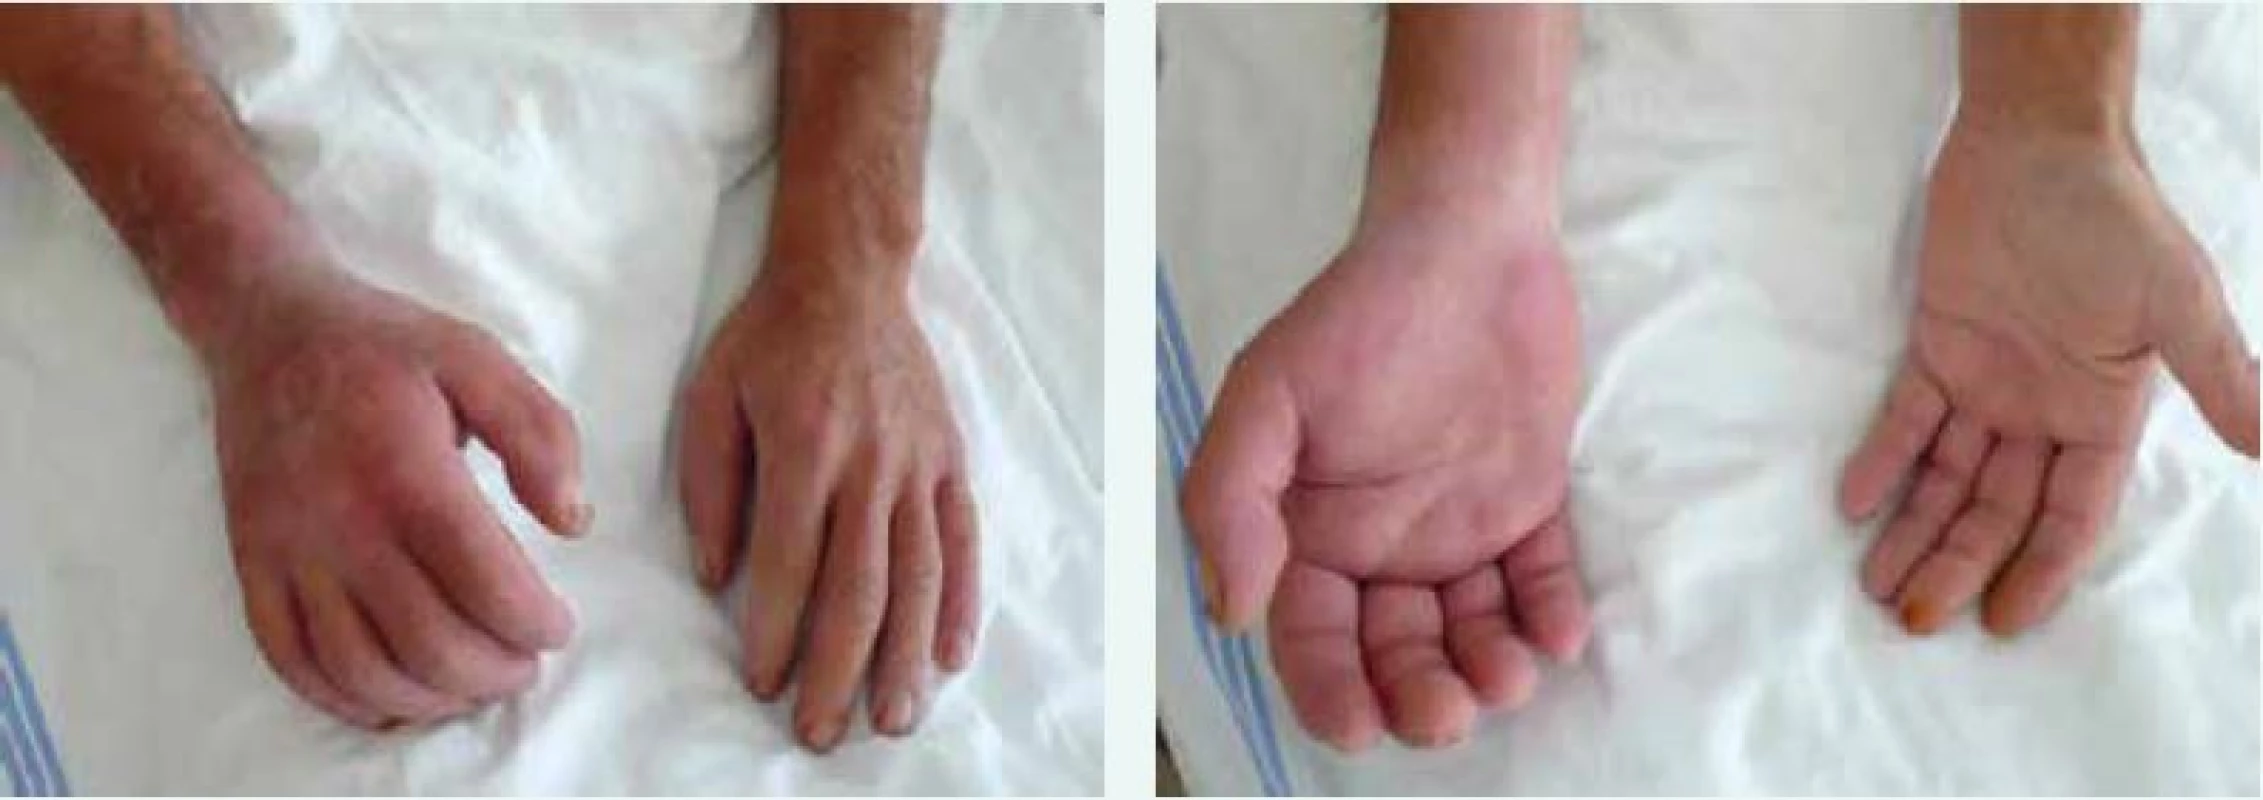 Sklerodermické postižení rukou a předloktí u nemocného se systémovou sklerodermií. Postižení je akcentováno pravostranně v souvislosti s profesním zatížením vibracemi pneumatického kladiva. Archiv autora